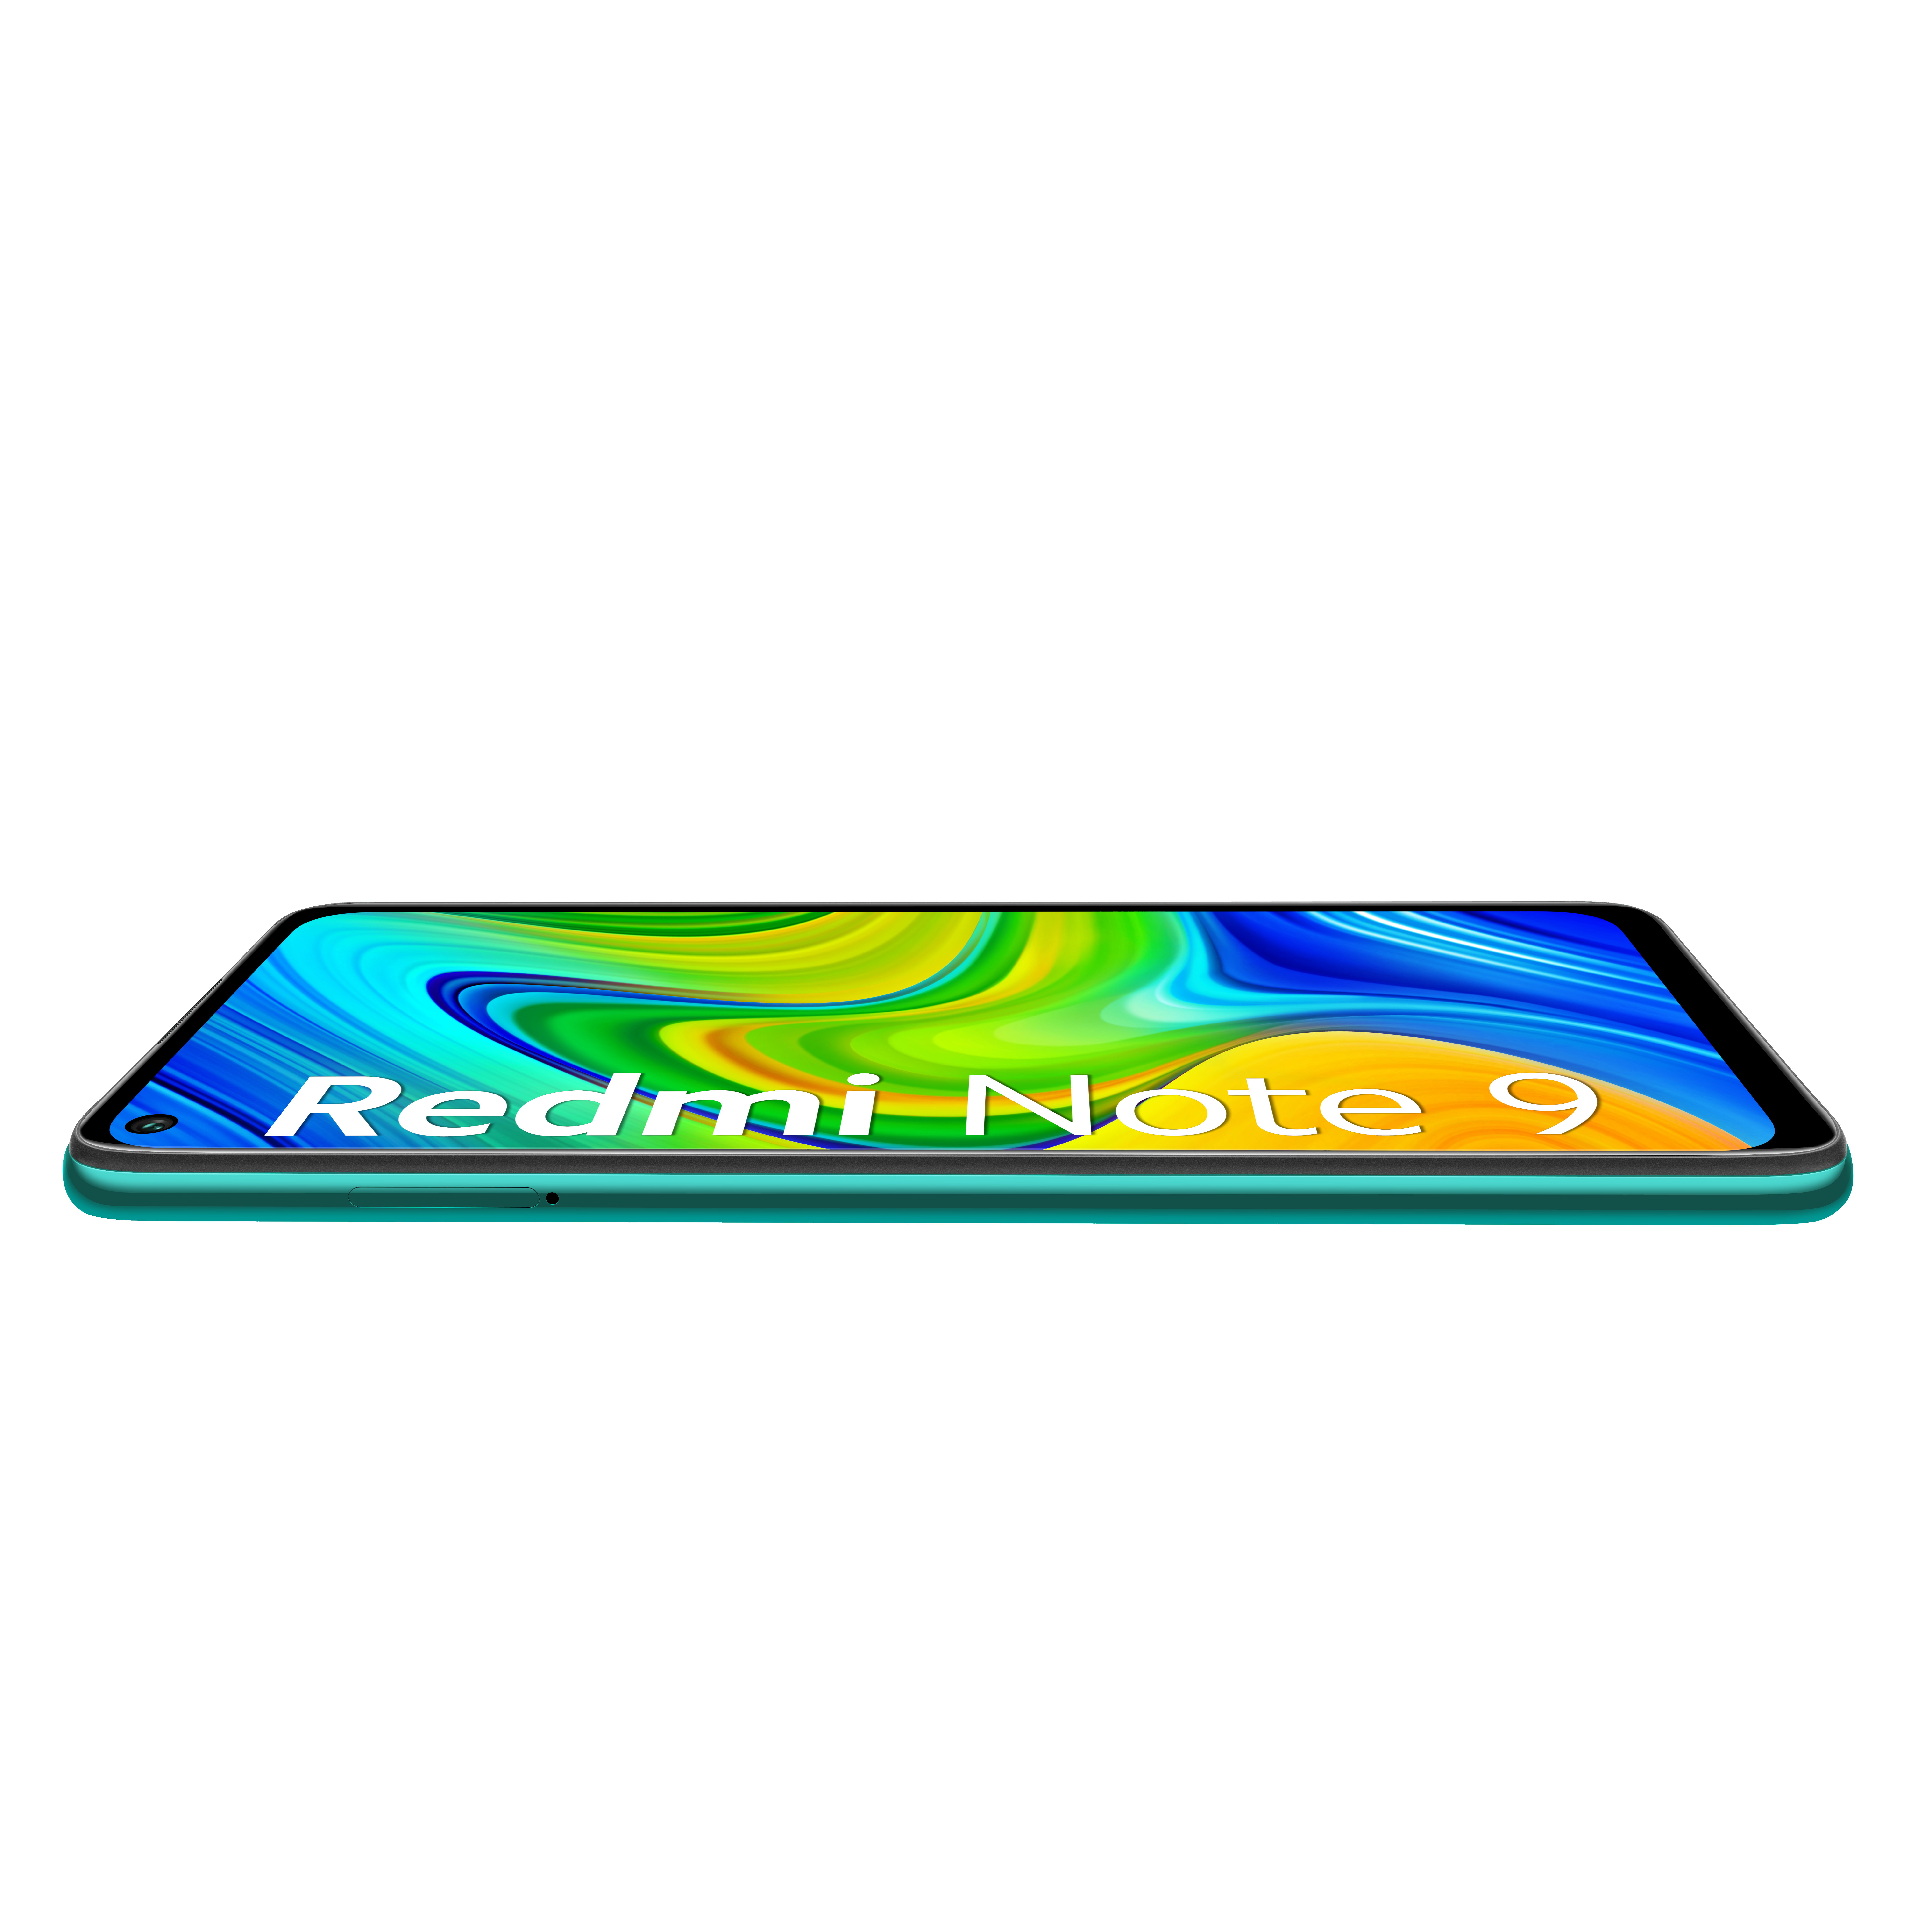 XIAOMI Redmi Note 9 64 Forest Green Dual SIM GB